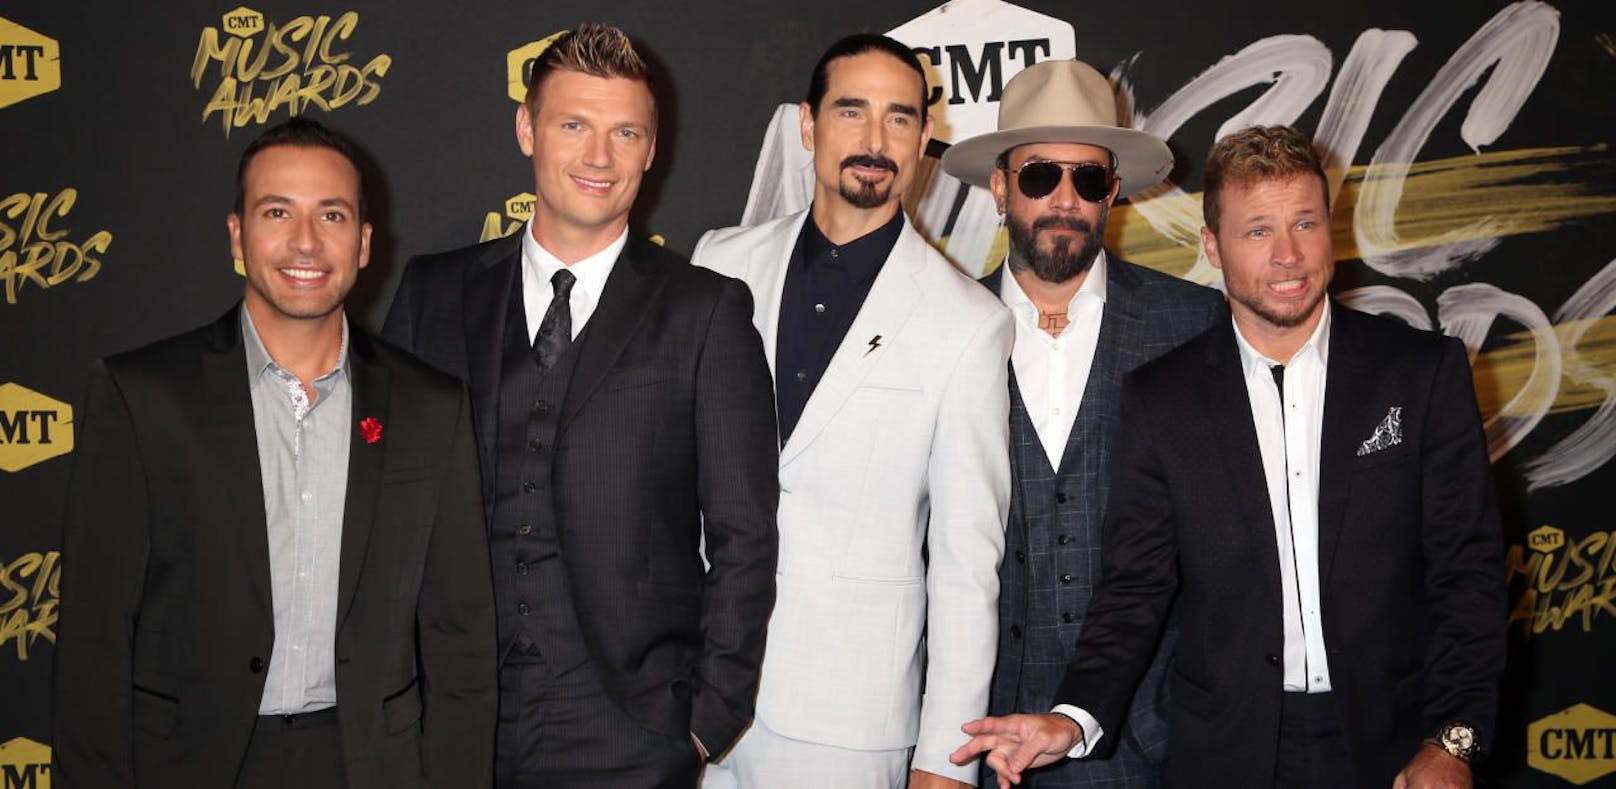 Backstreet Boys in Wien - Tickets JETZT erhältlich